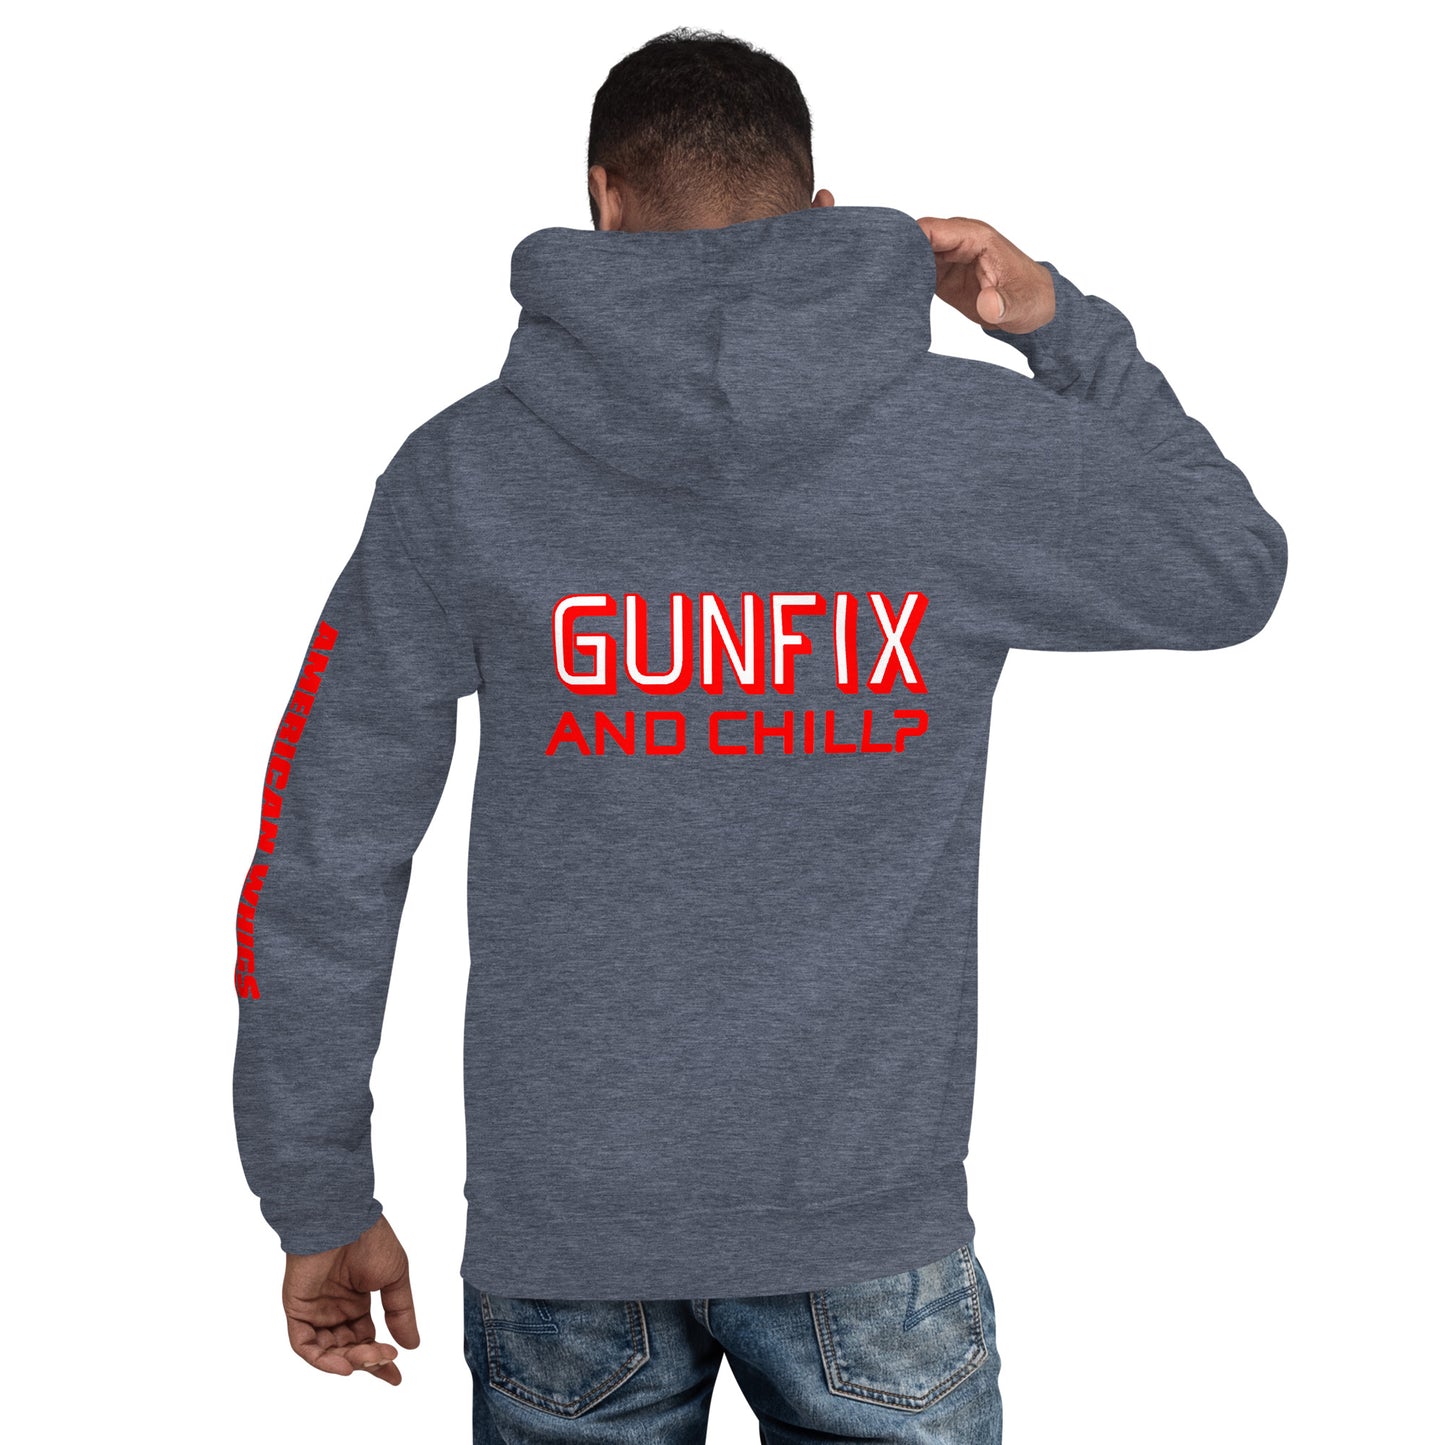 GUNFIX & Chill? Unisex Hoodie